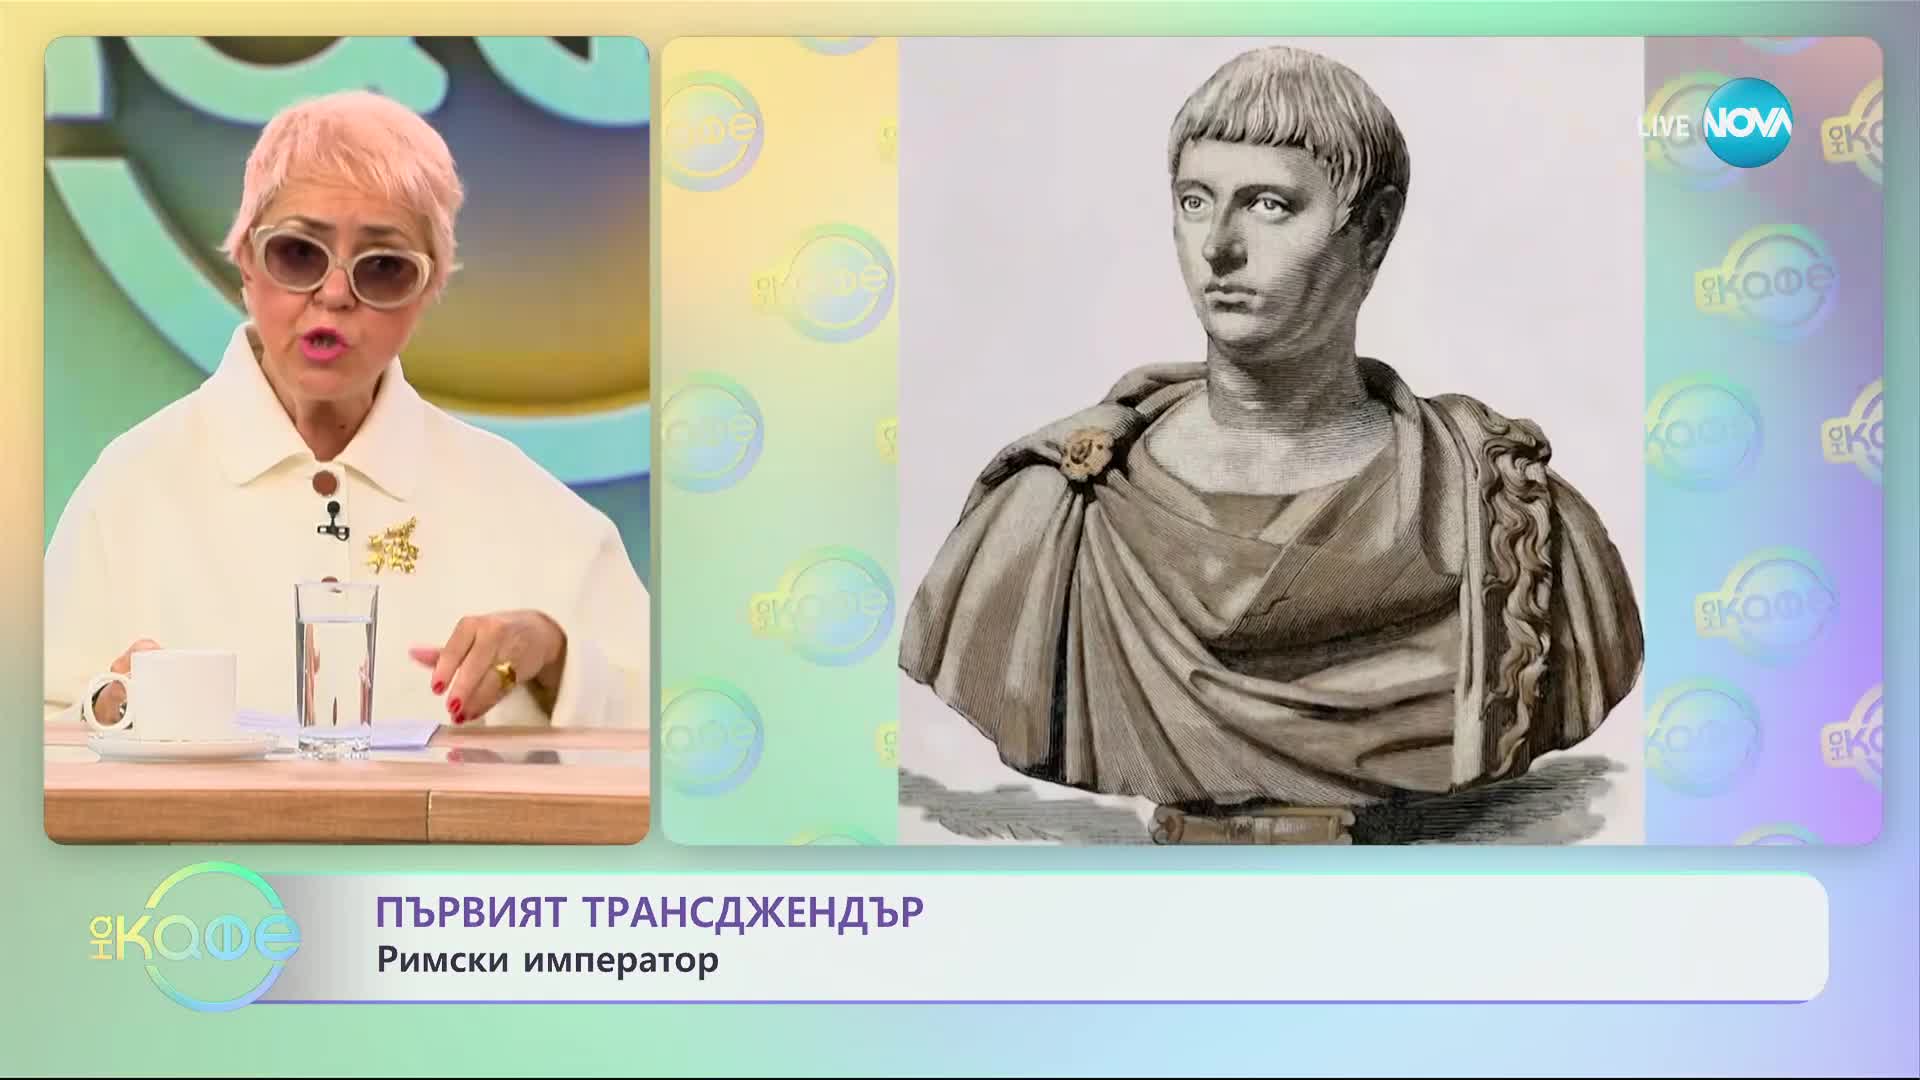 Първият трансджендър е бил римски император